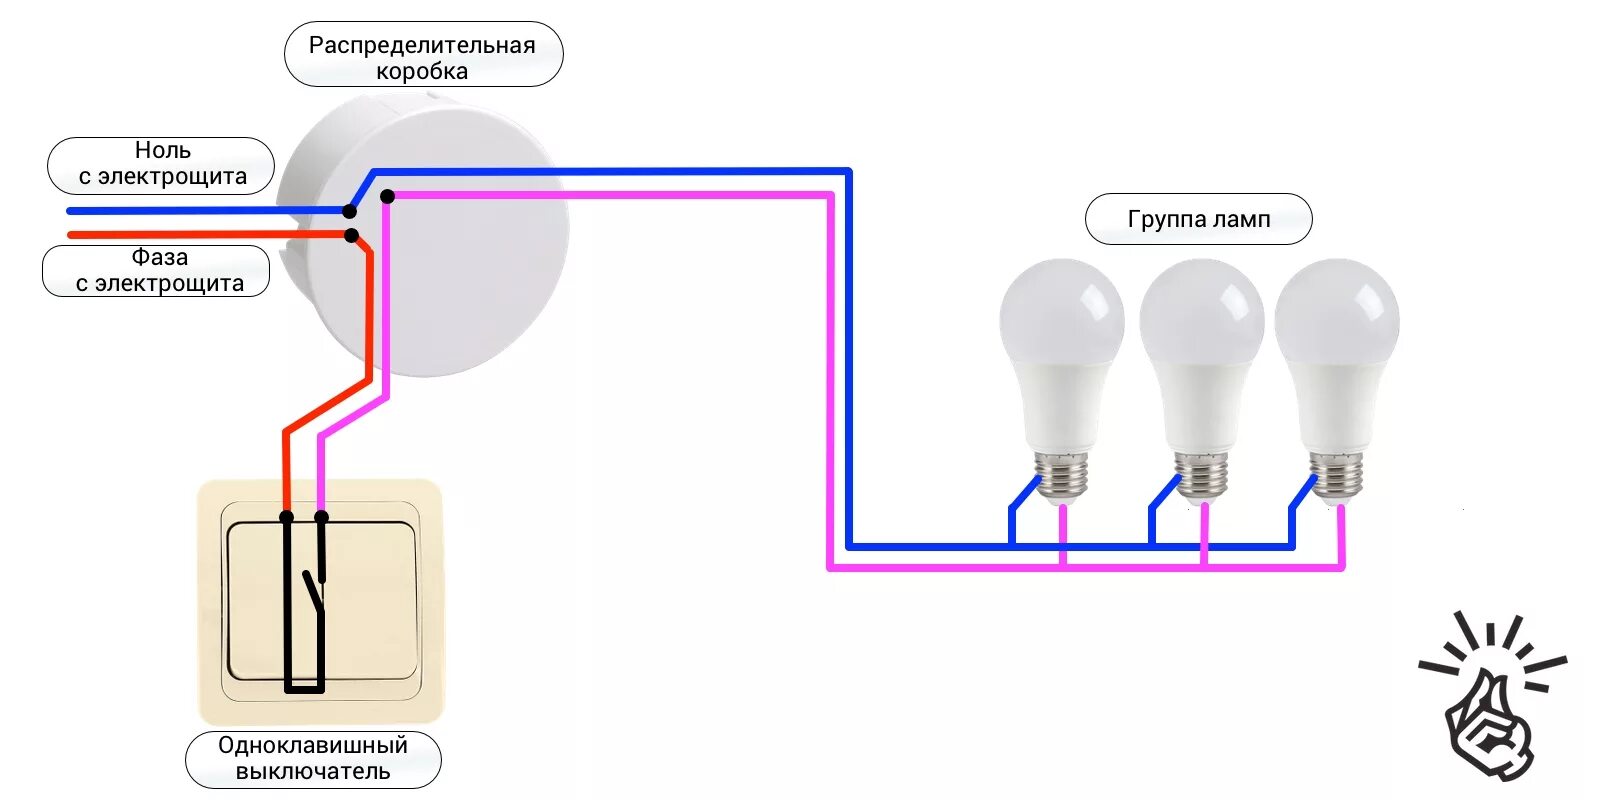 Как подключить выключатель к сети. Схема подключения одноклавишного выключателя на две лампочки. Схема подключения одноклавишного выключателя на две лампы. Схема подключения одноклавишного выключателя к лампе. Схема подключения выключателя одноклавишного к 2 лампочкам.